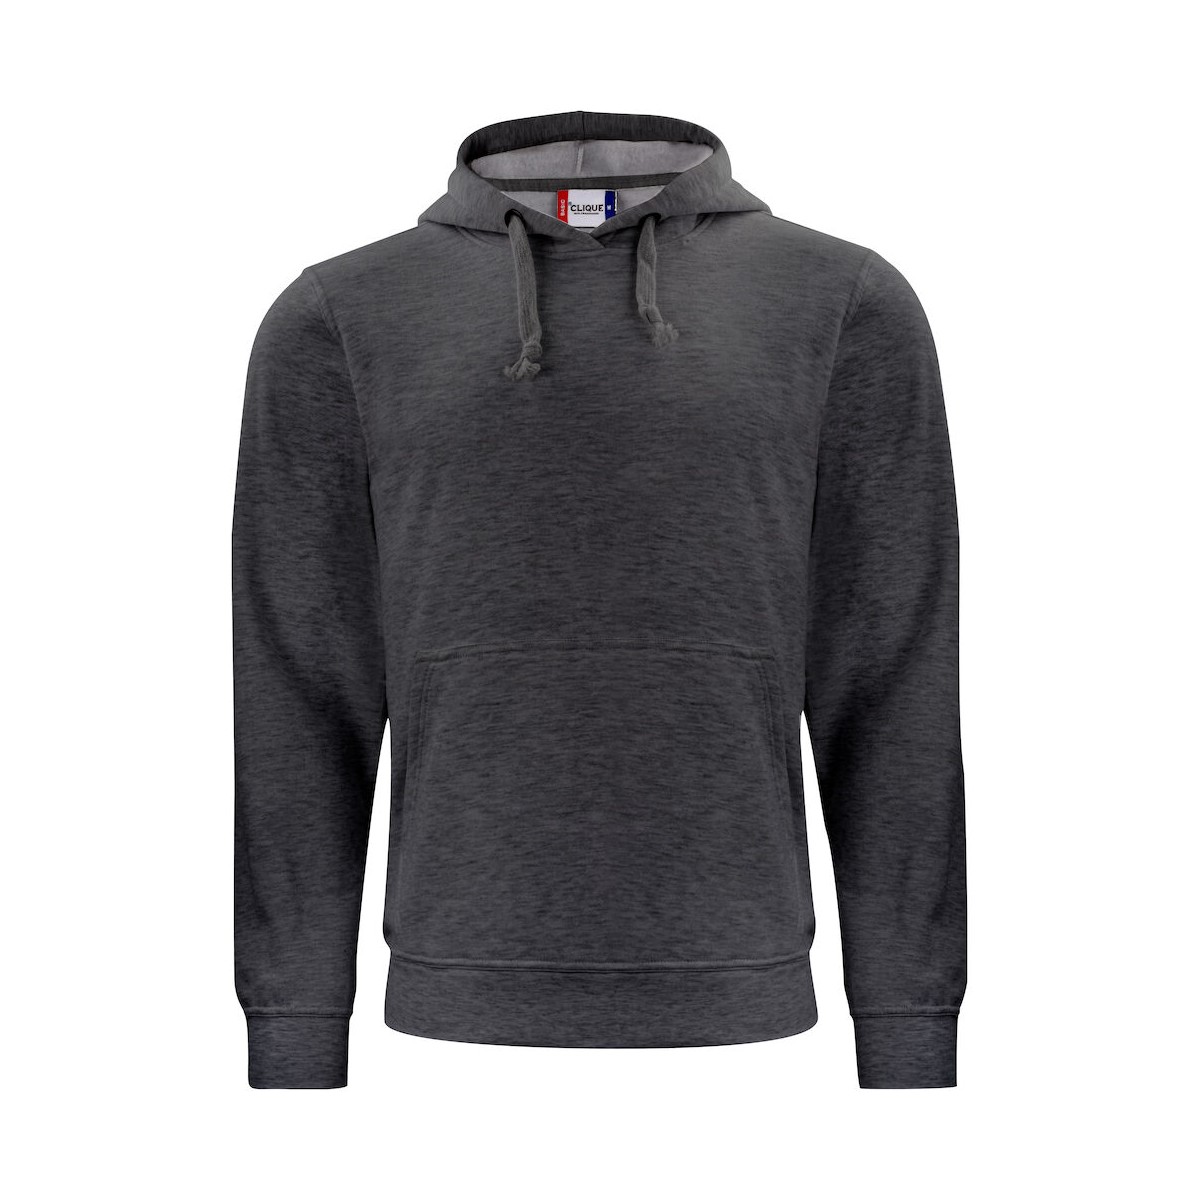 Sweatshirt à capuche unisexe - 65% polyester et 35% coton - CLIQUE - Personnalisable en petite quantité - Couleur multiples